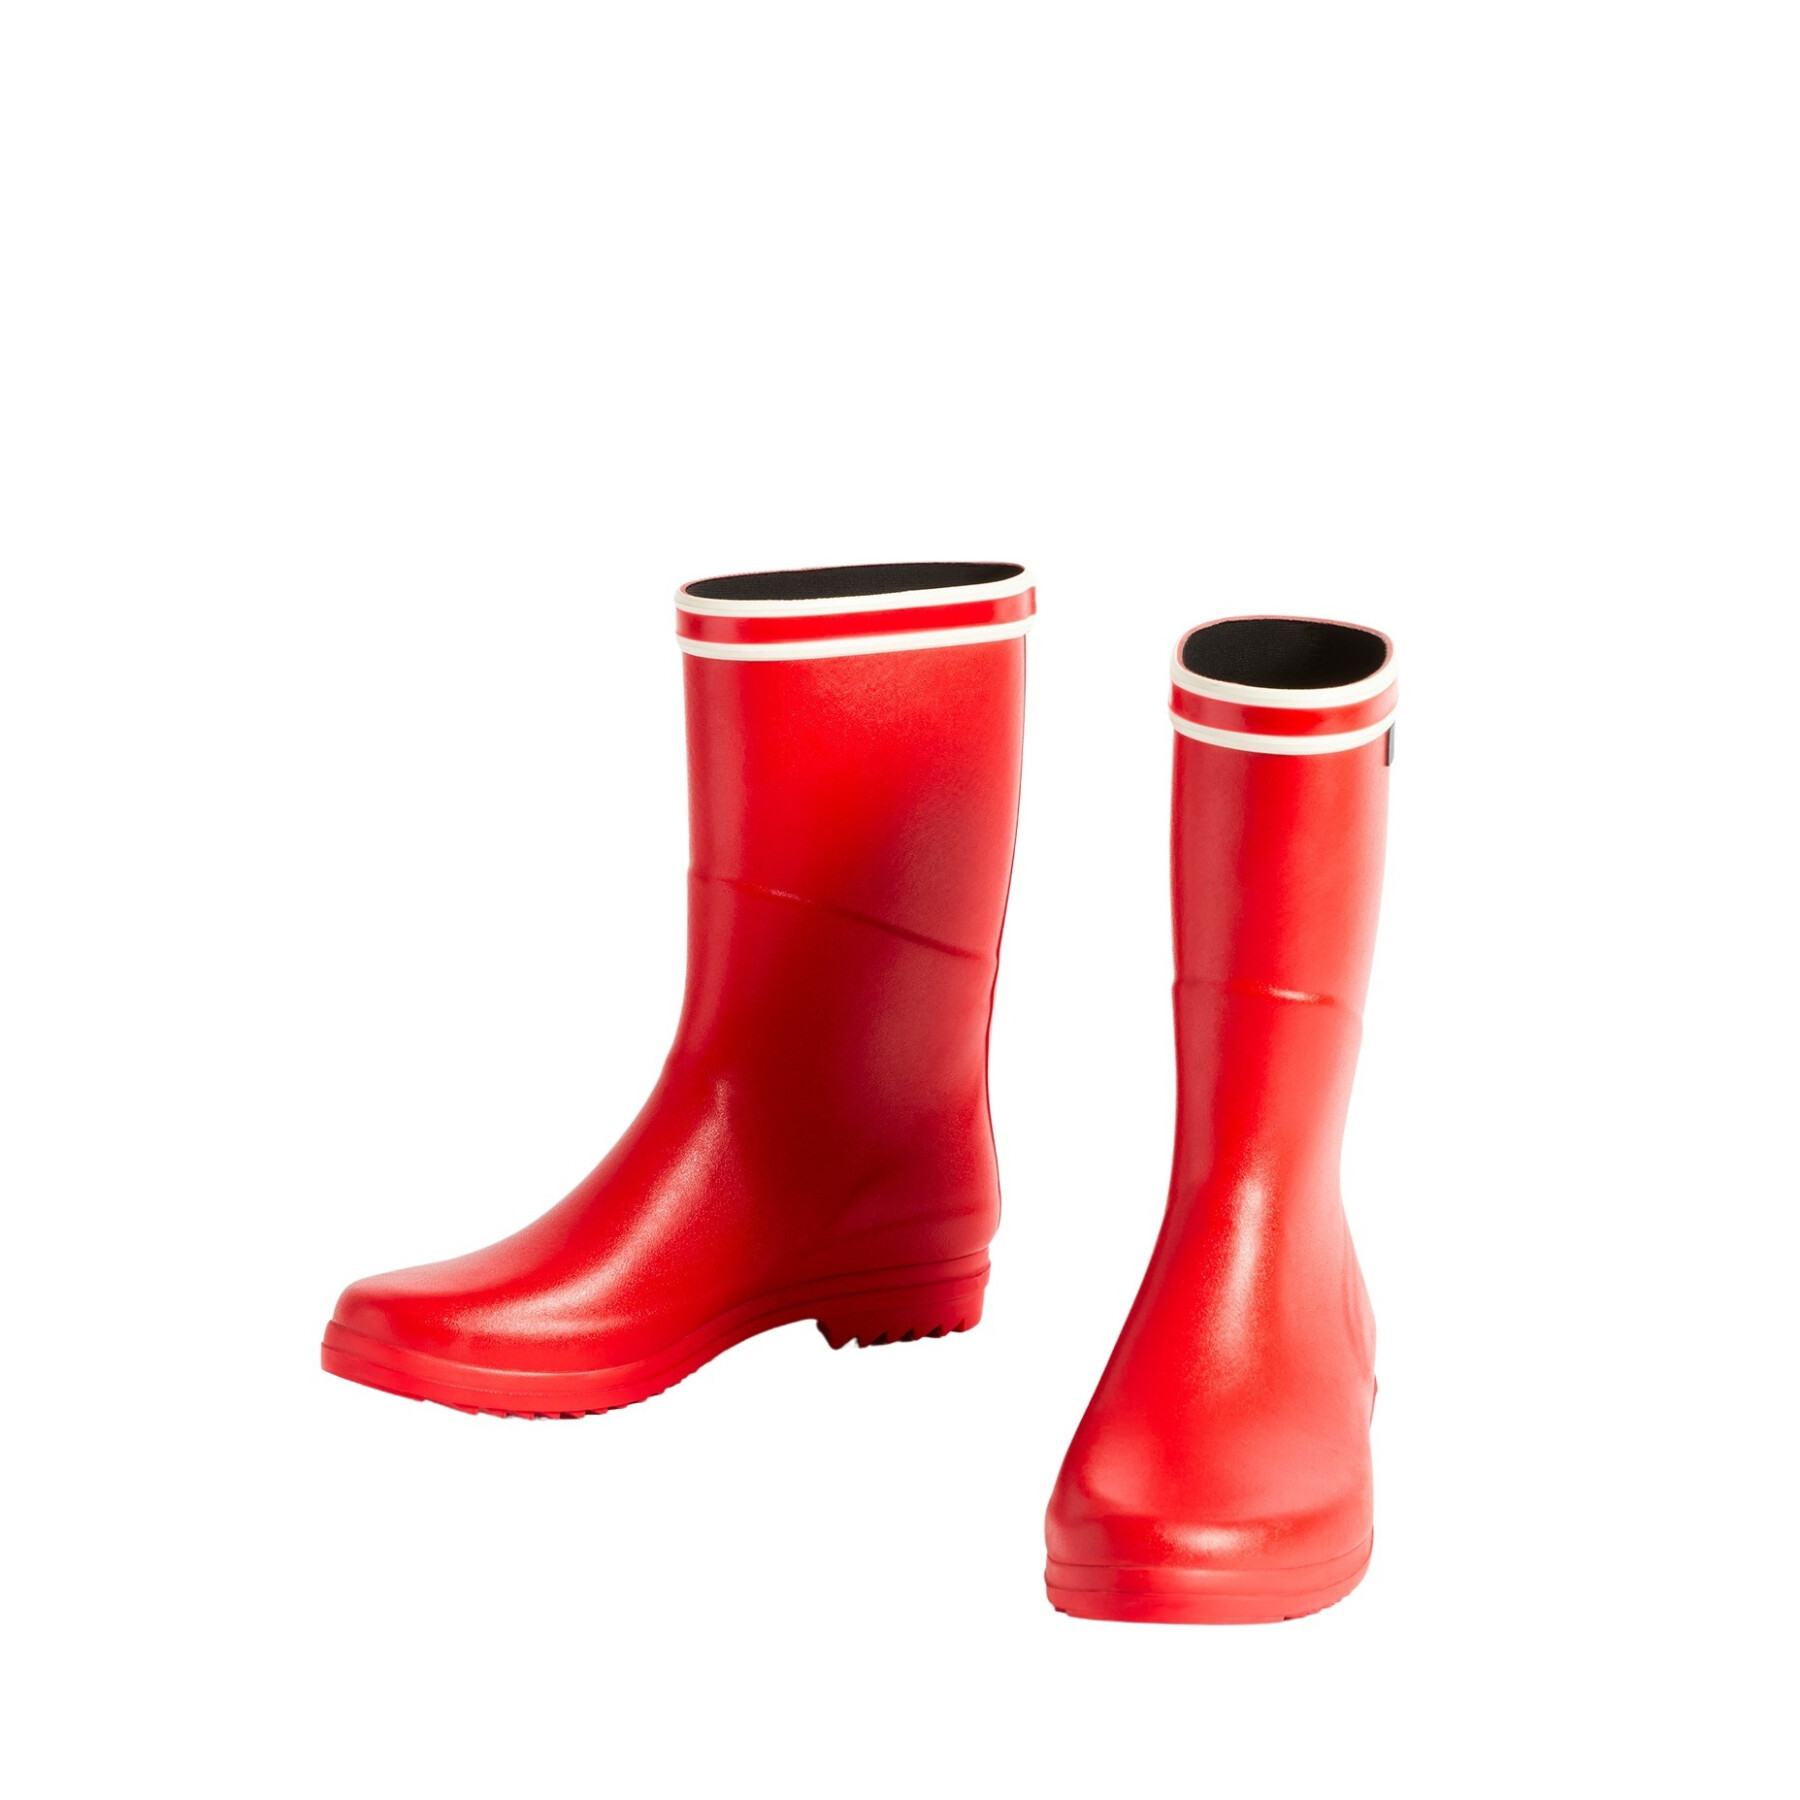 Women's rain boots Aigle Chanteboot Stnl